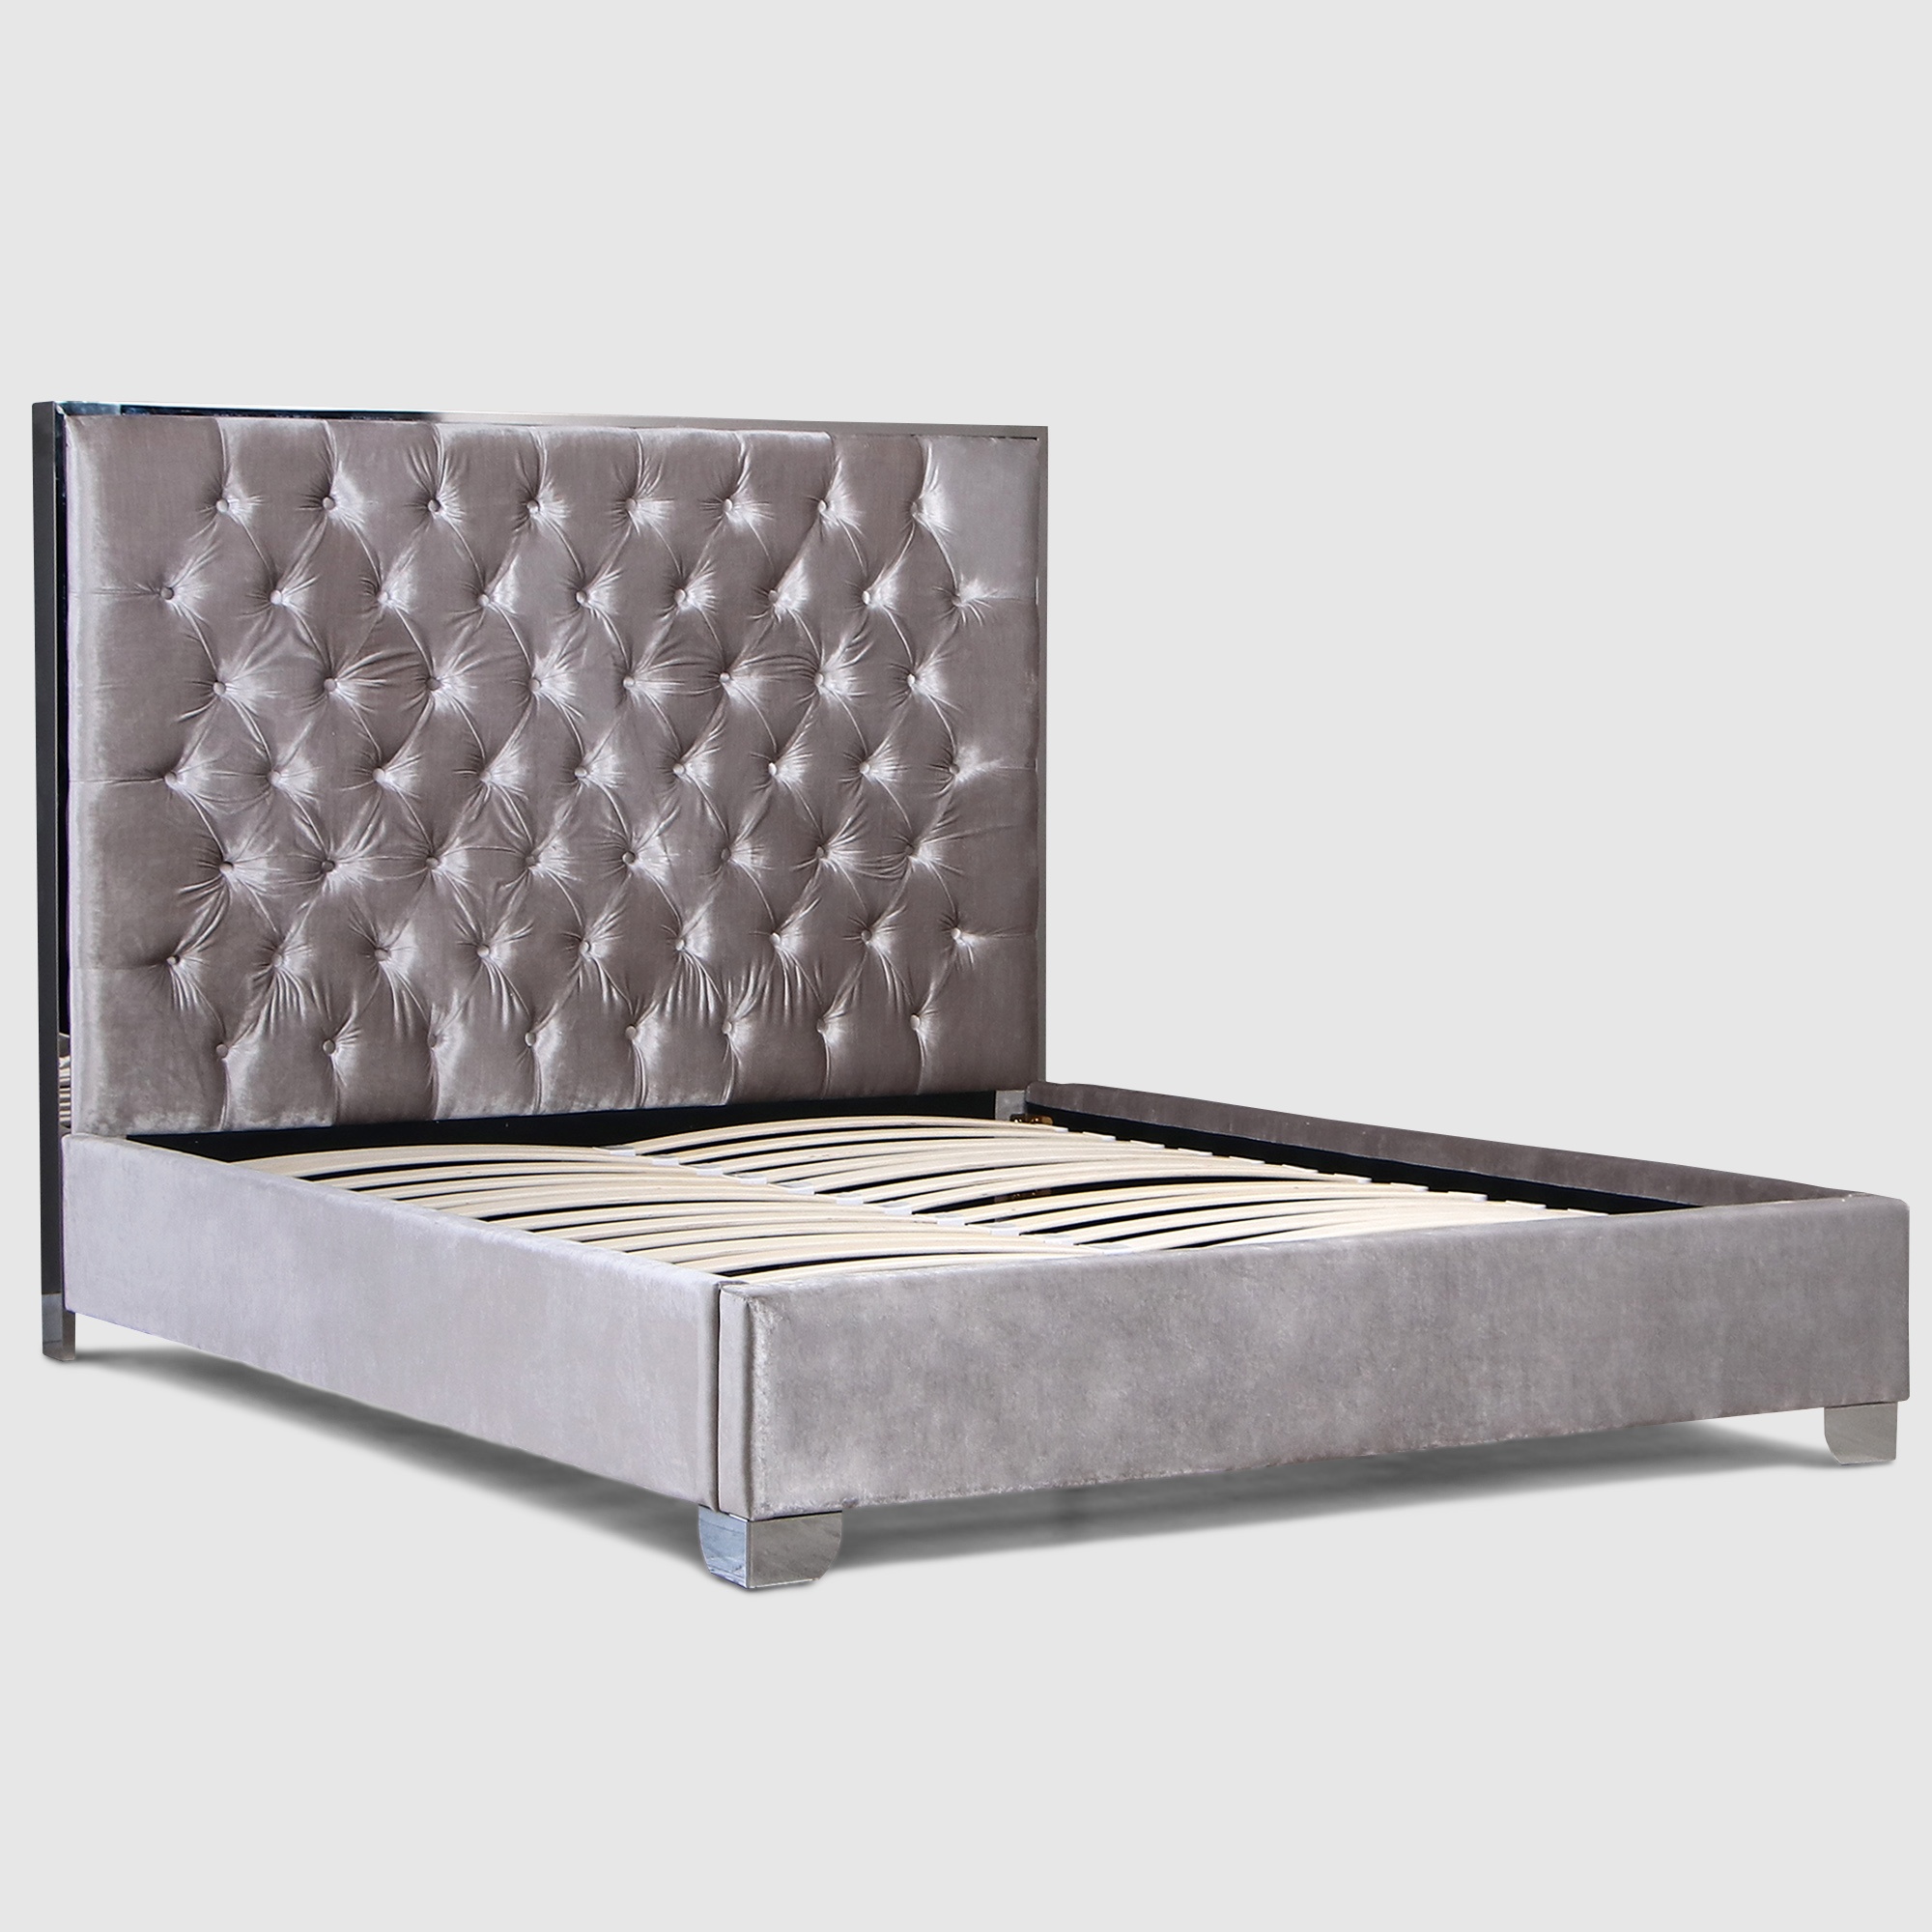 Кровать двуспальная ahf лили серебристая 160x200 см